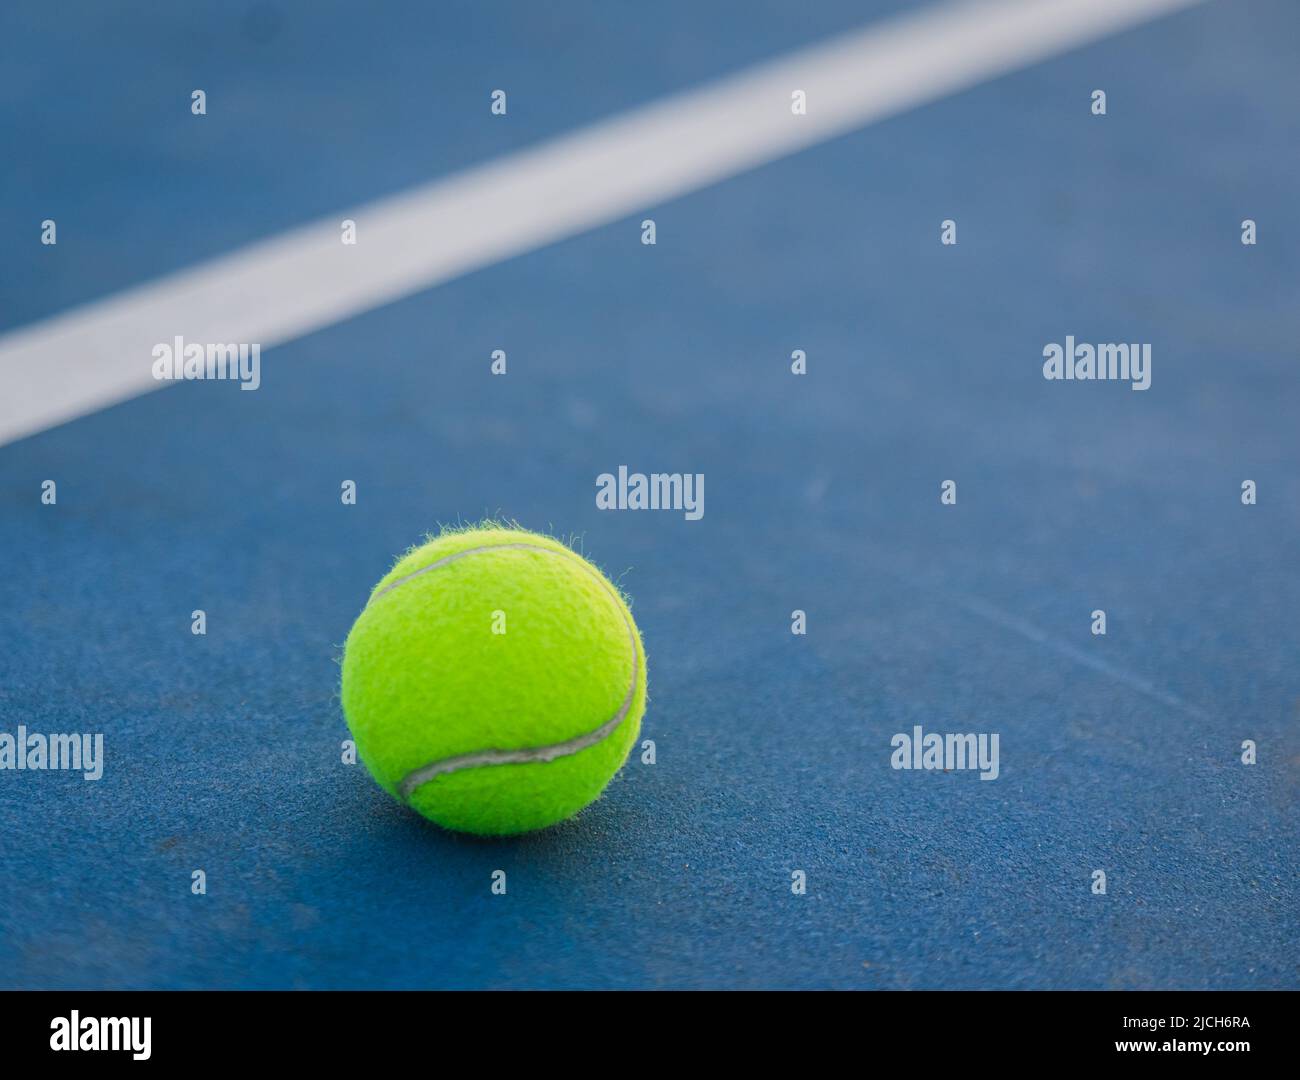 Primo piano di pallina da tennis gialla su un campo blu duro. Foto Stock